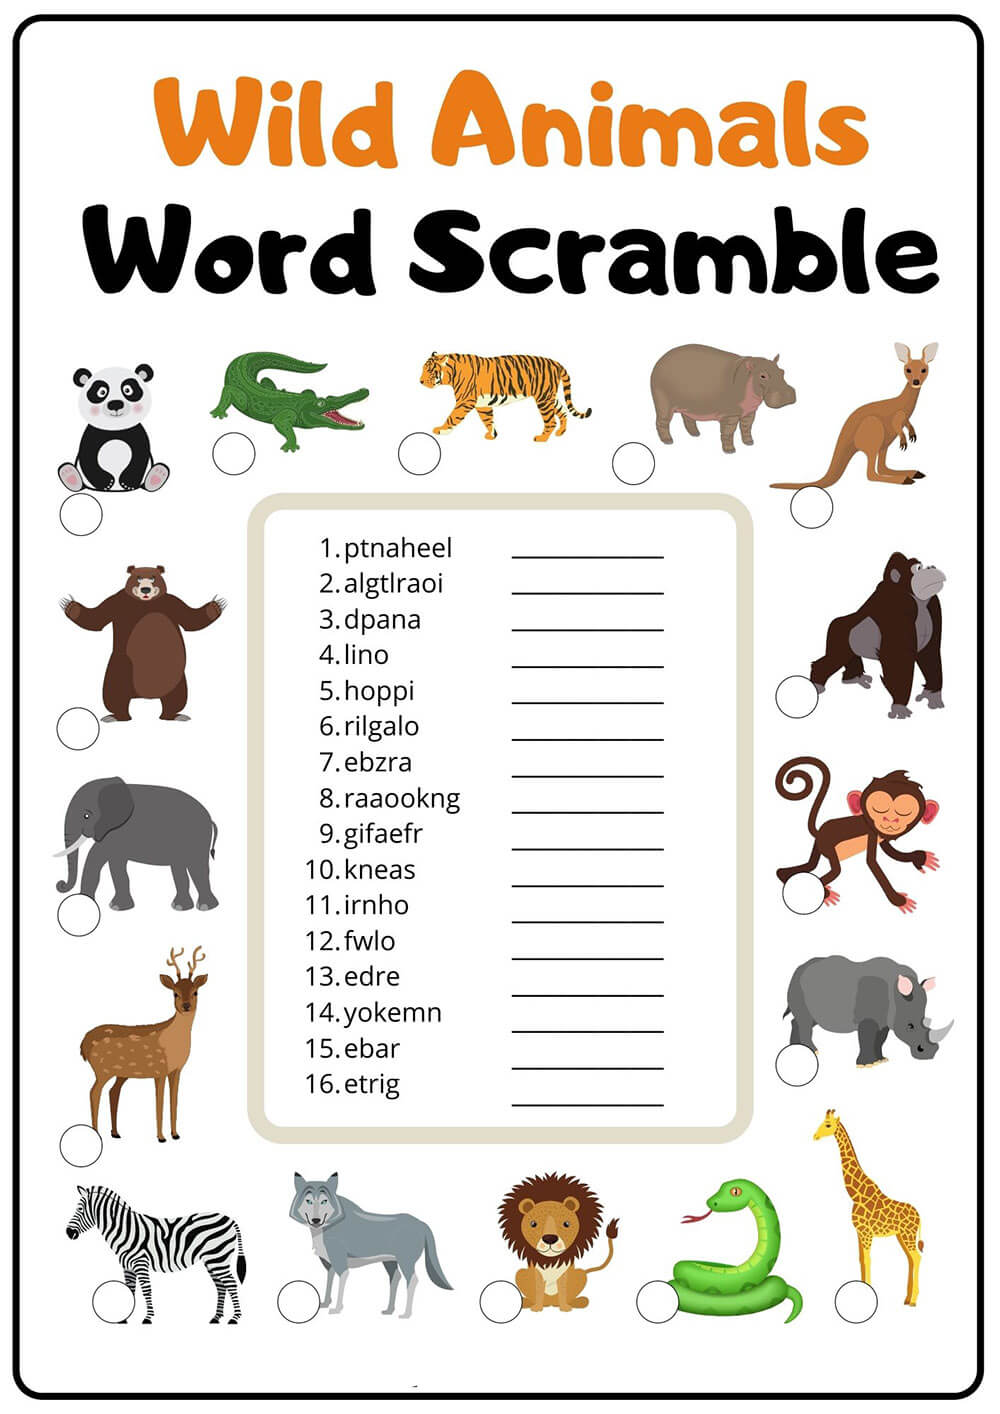 Wild Animals Word Scramble